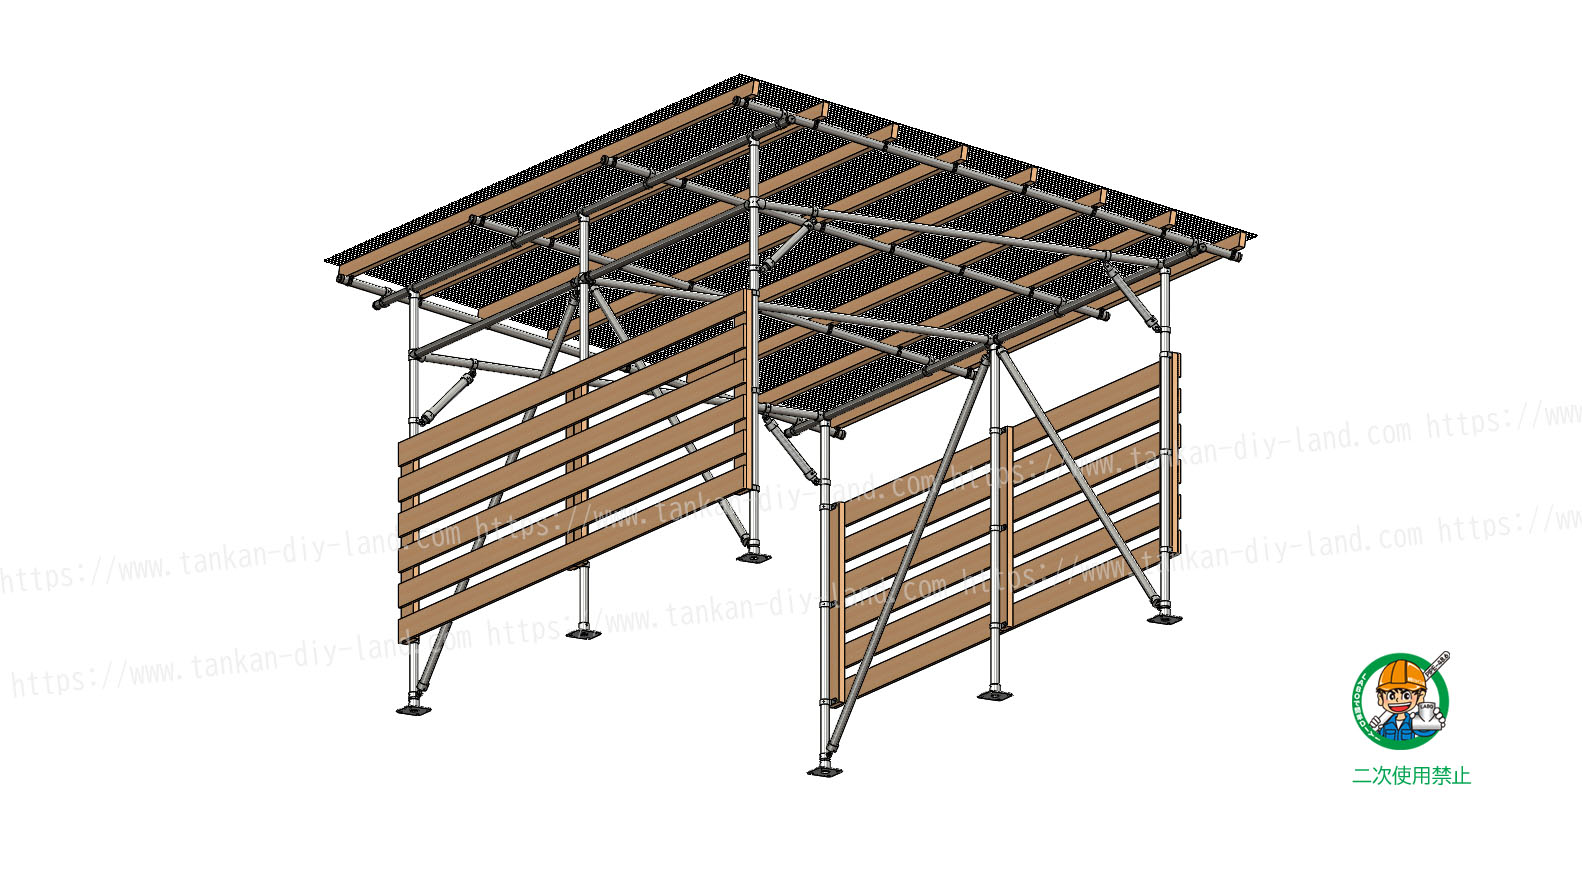 スッキリデザインのｌａｂｏ金具で 簡単 に作る 片流れ屋根の カーポート 小屋 6 単管パイプで作る 単管パイプのdiyや組み方の学習なら単管diyランド